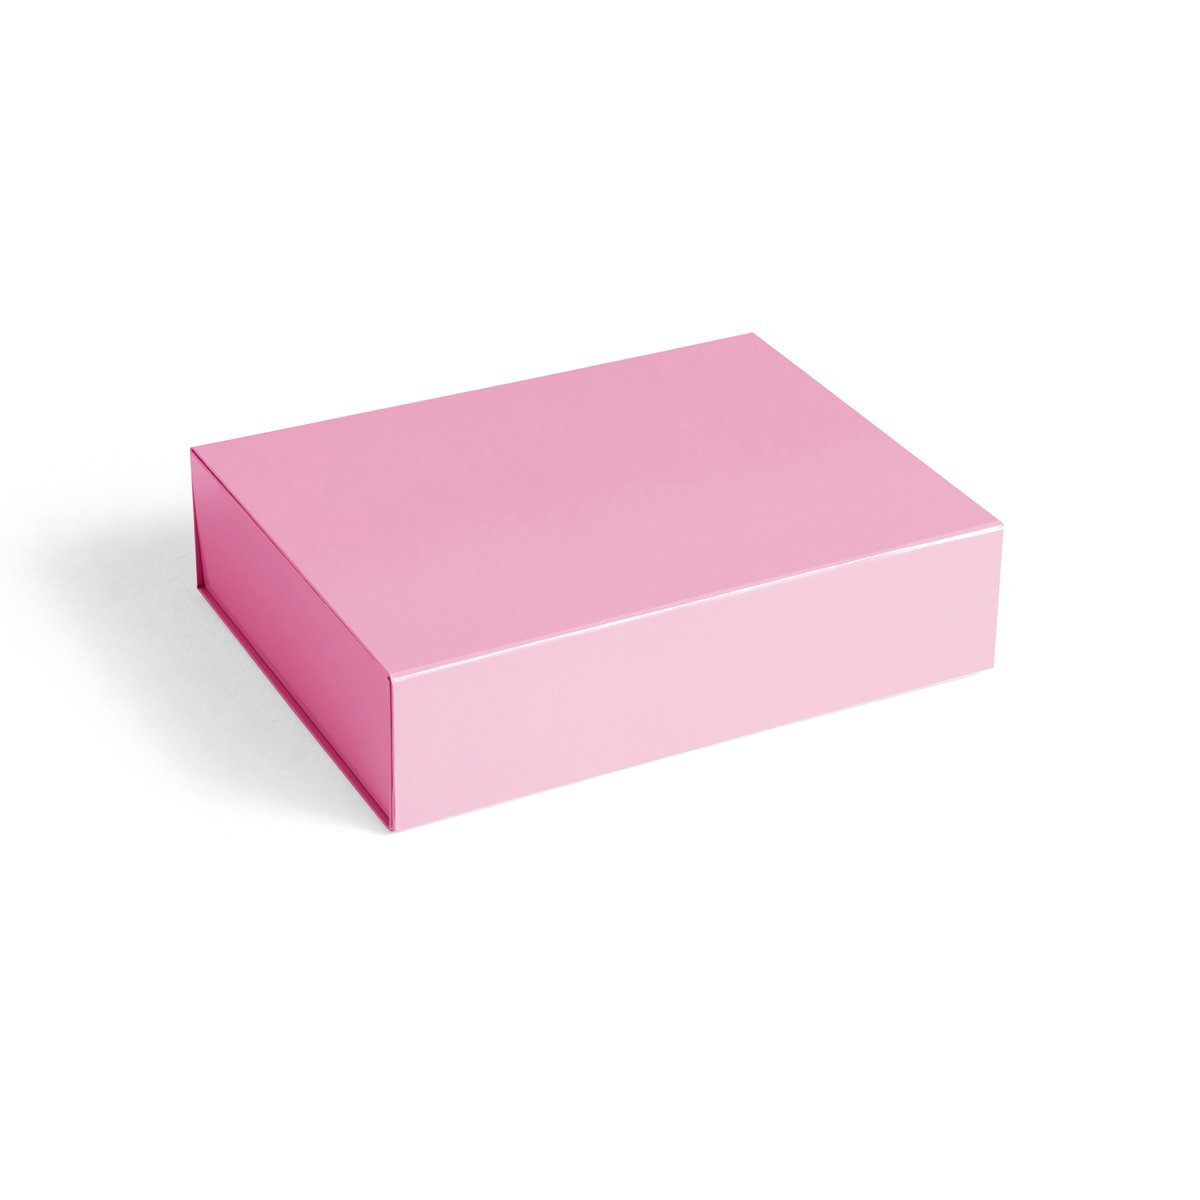 HAY Colour Storage S kannellinen laatikko 25,5×33 cm Light pink